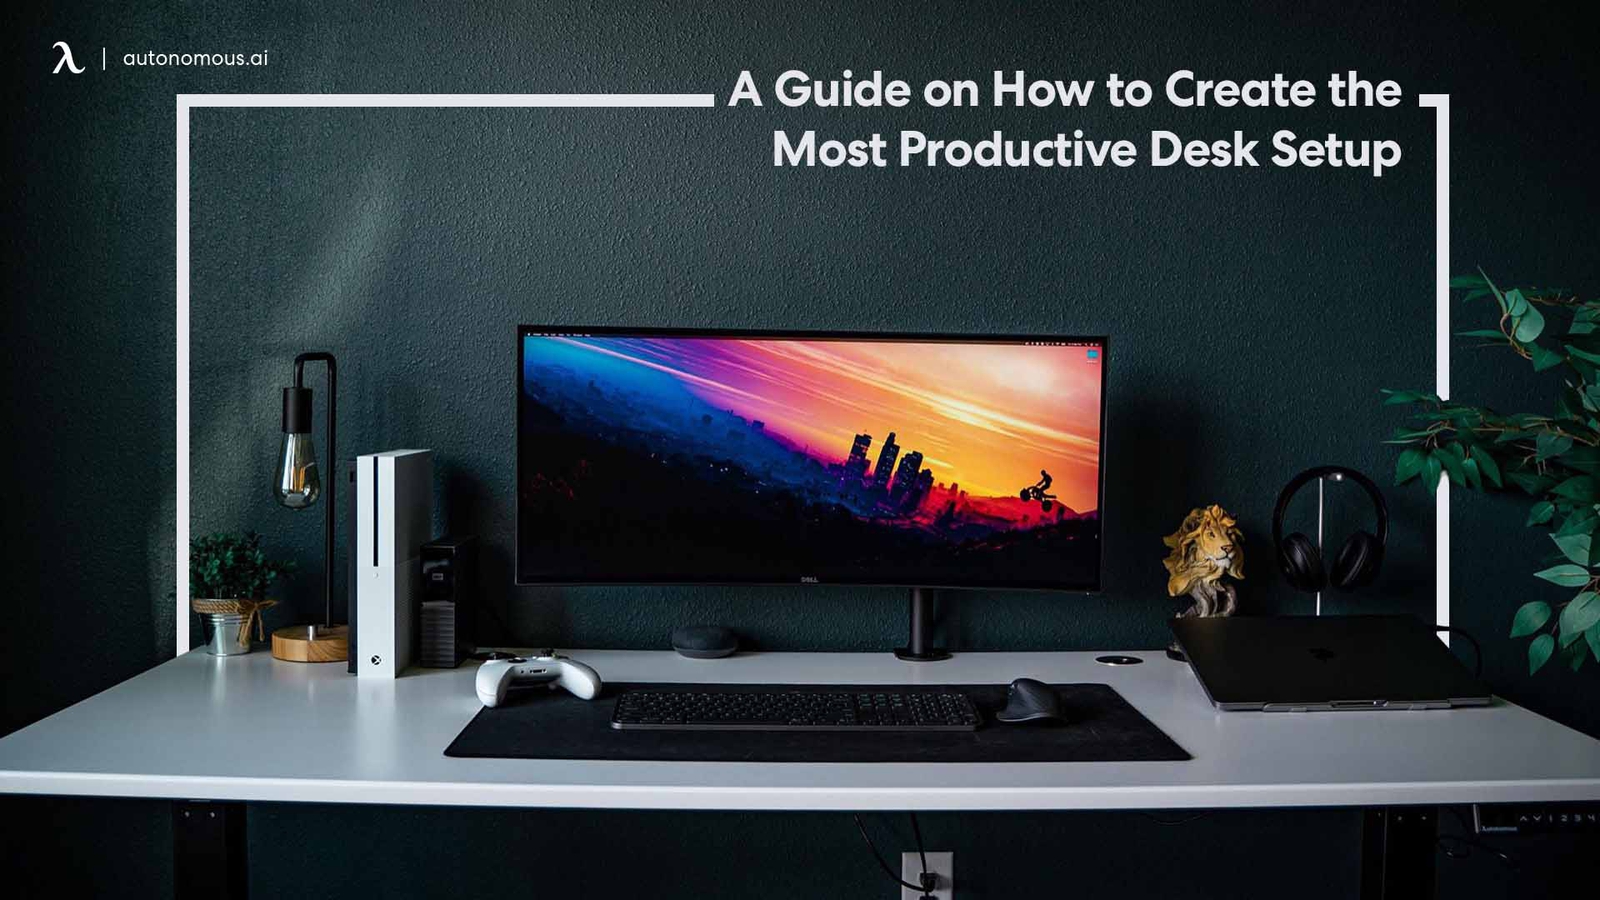 Best Desk Setup For Ivity With 8, How To Make A Good Desk Setup